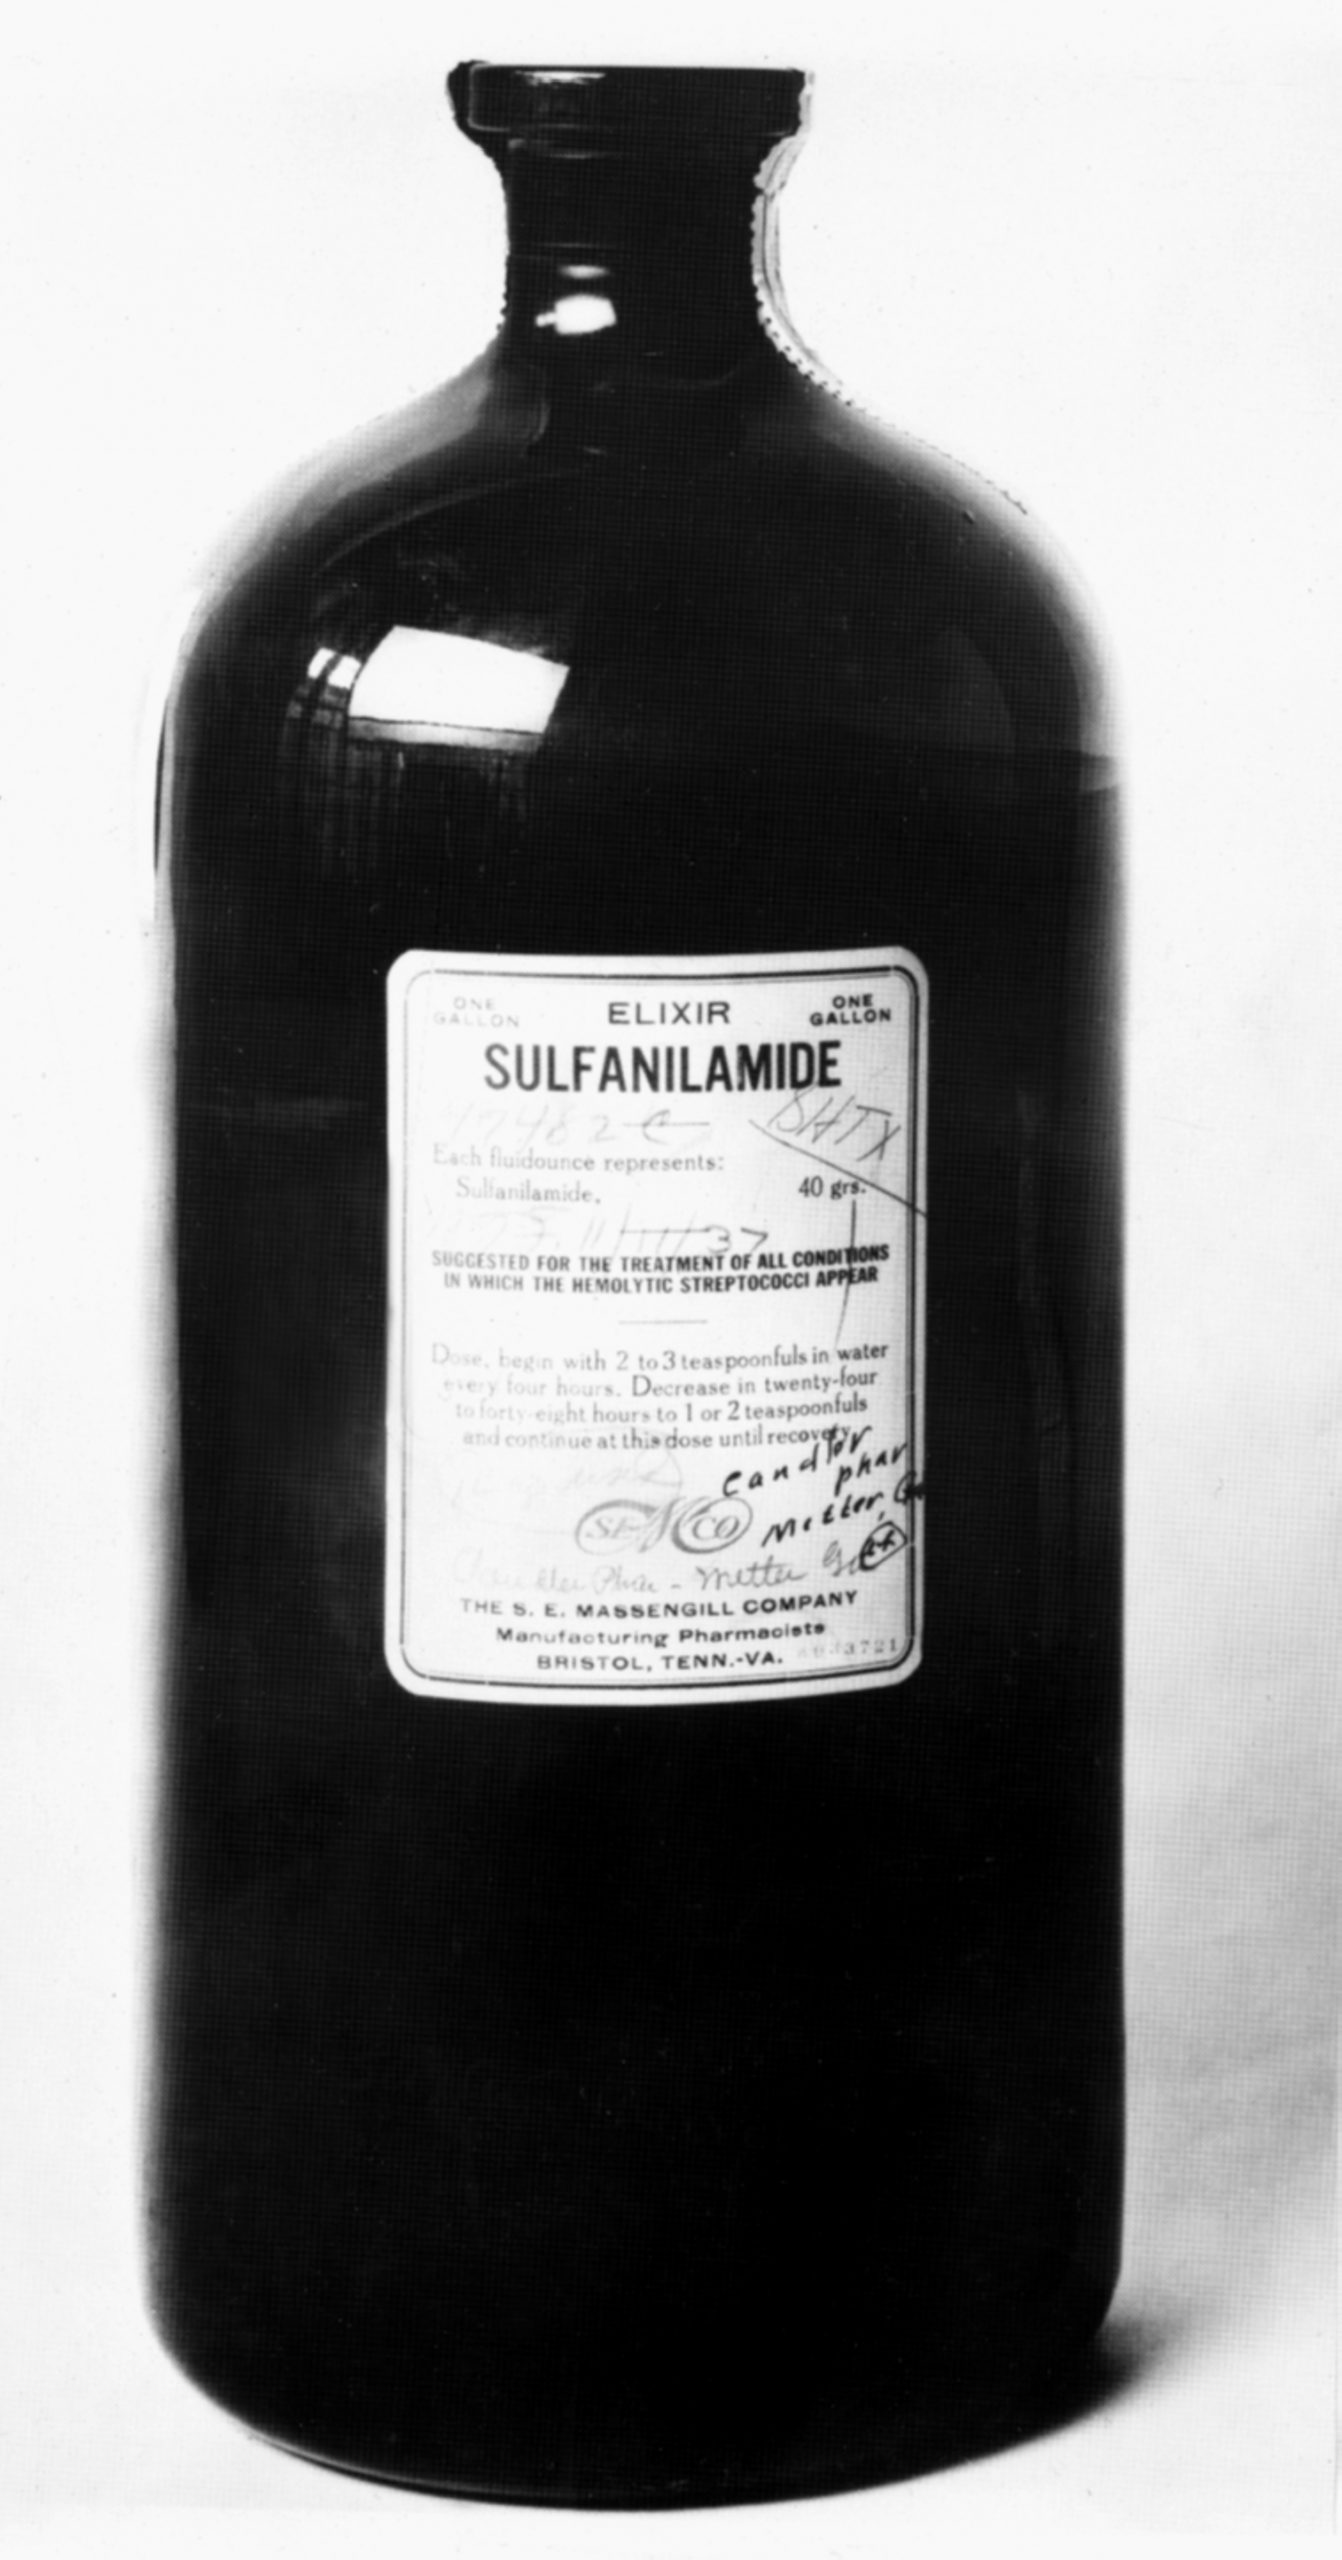 Foto em preto e branco de um frasco escuro, de vidro e com rótulo retangular do elixir Sulfanilamide.